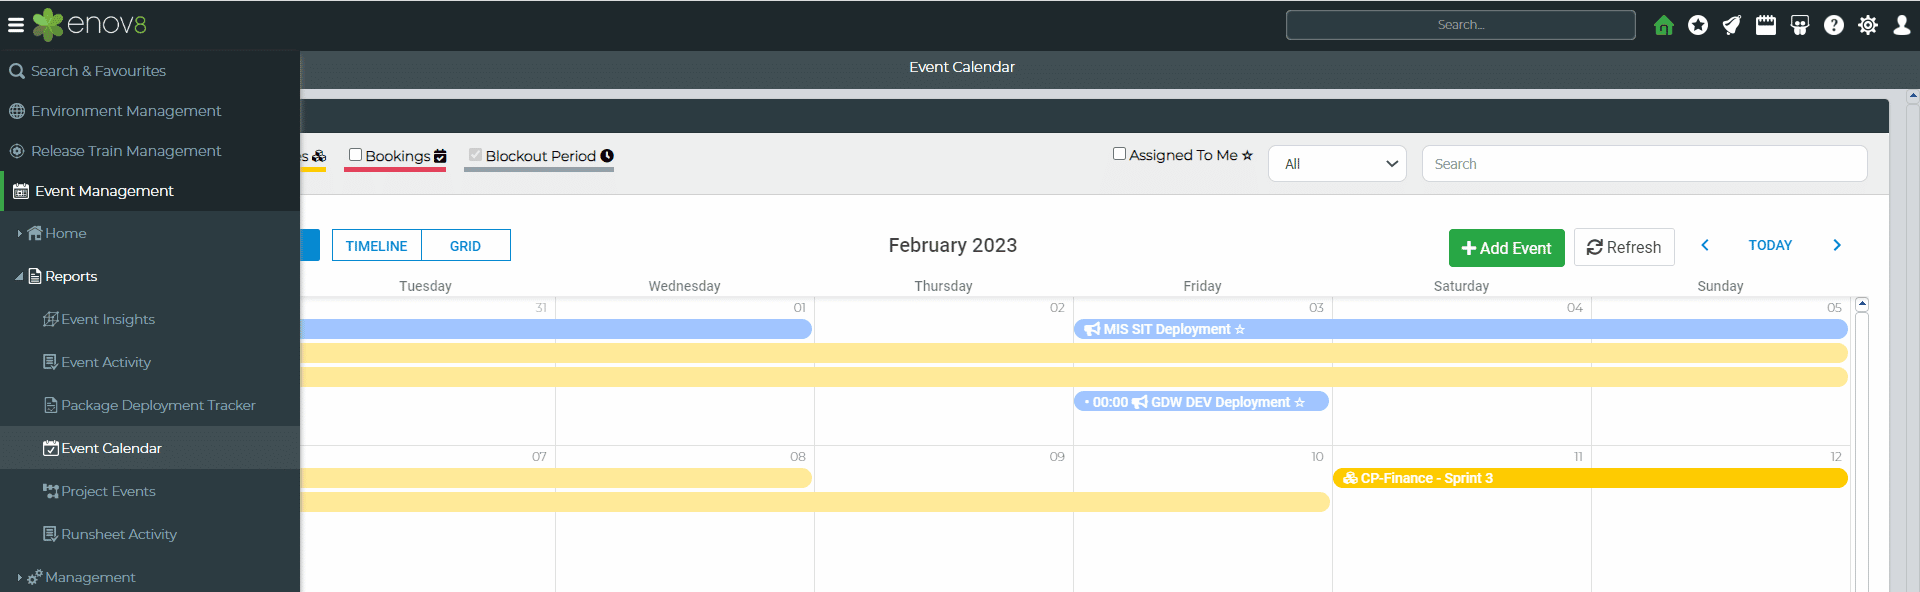 Enov8 Environment Calendar